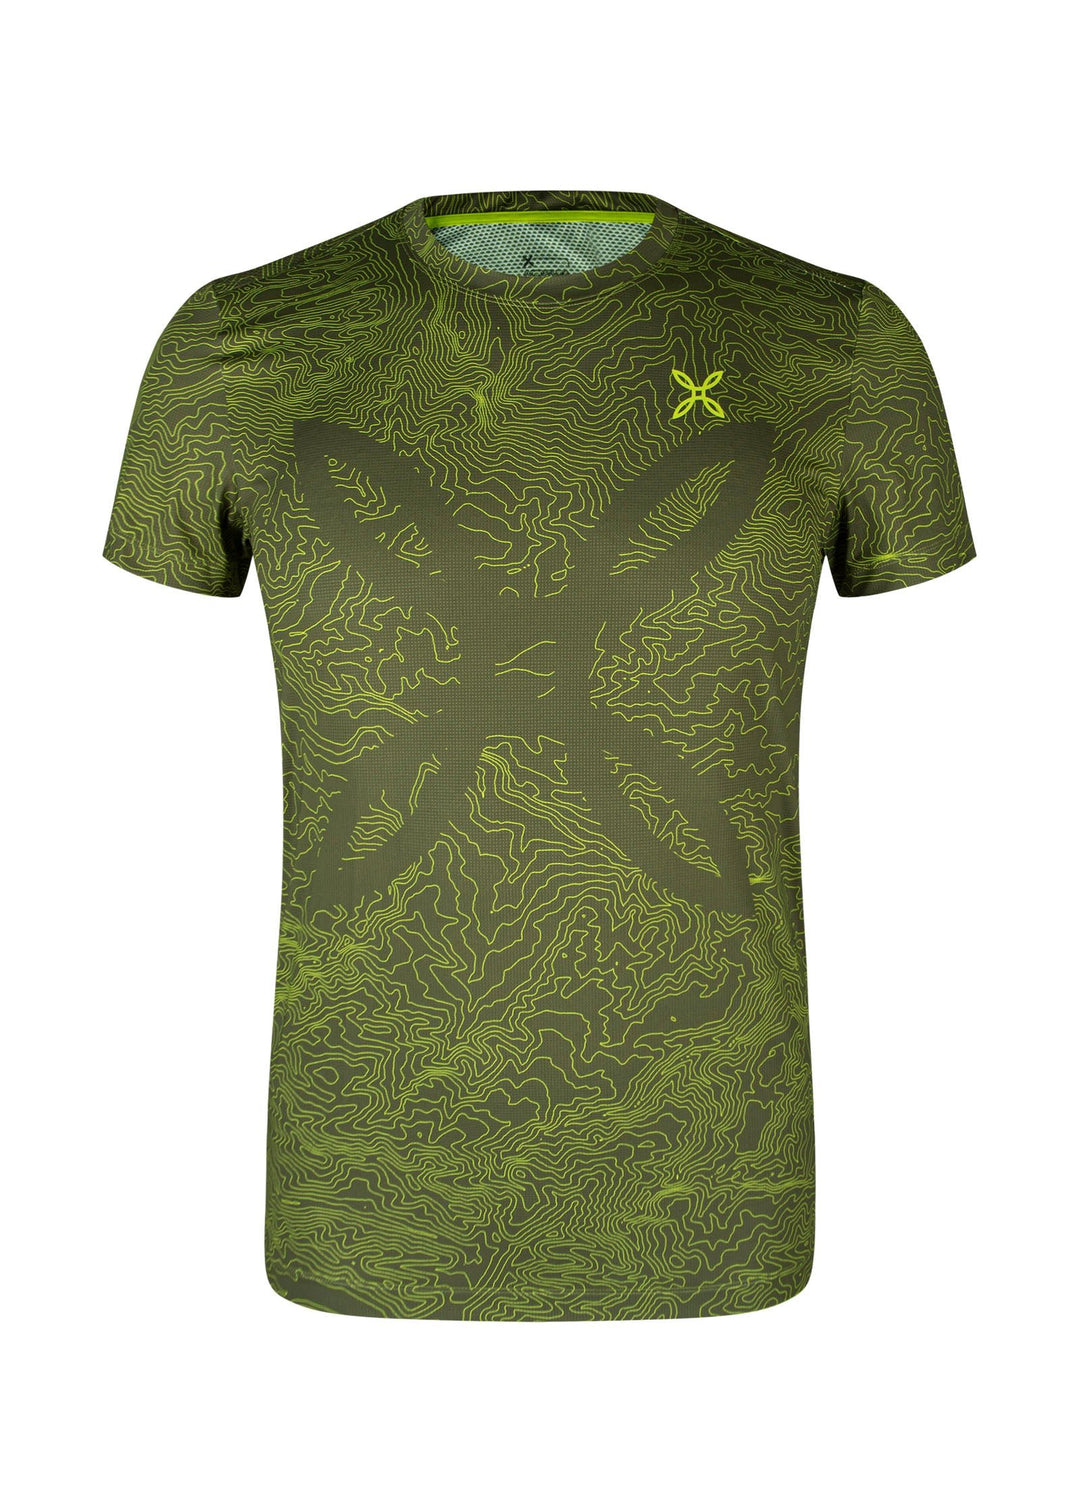 Topographic Sublime T-Shirt - Verde Salvia/Verde Lime (4947) - Bshop